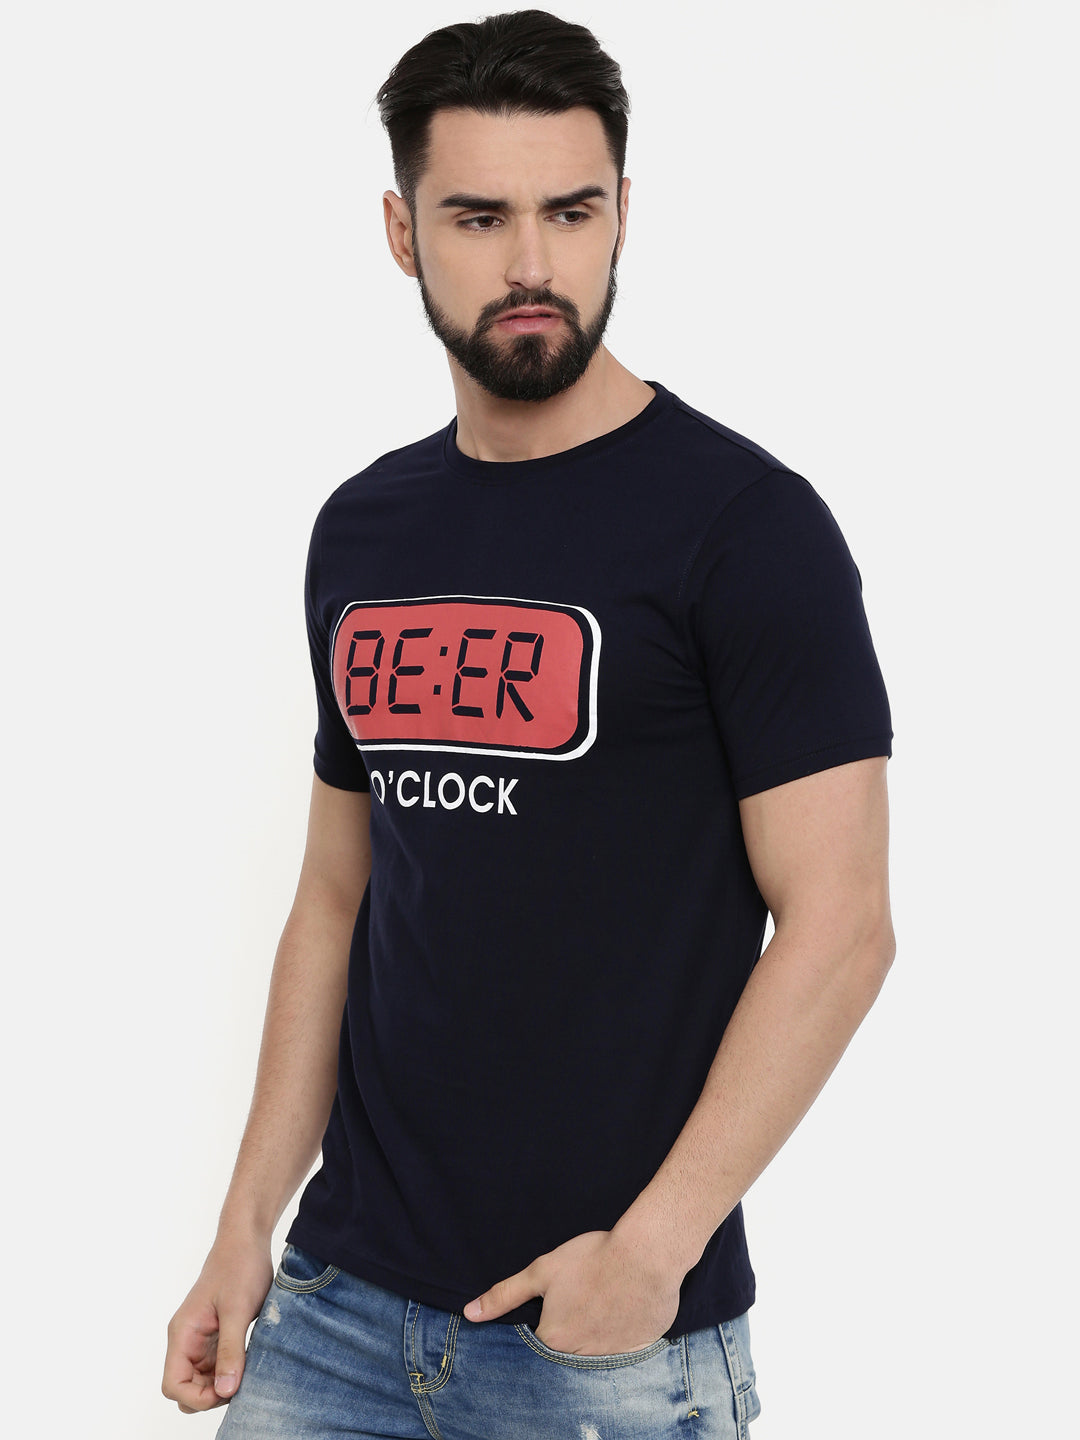 Beer O Clock T Shirt Graphic T-Shirts Bushirt   